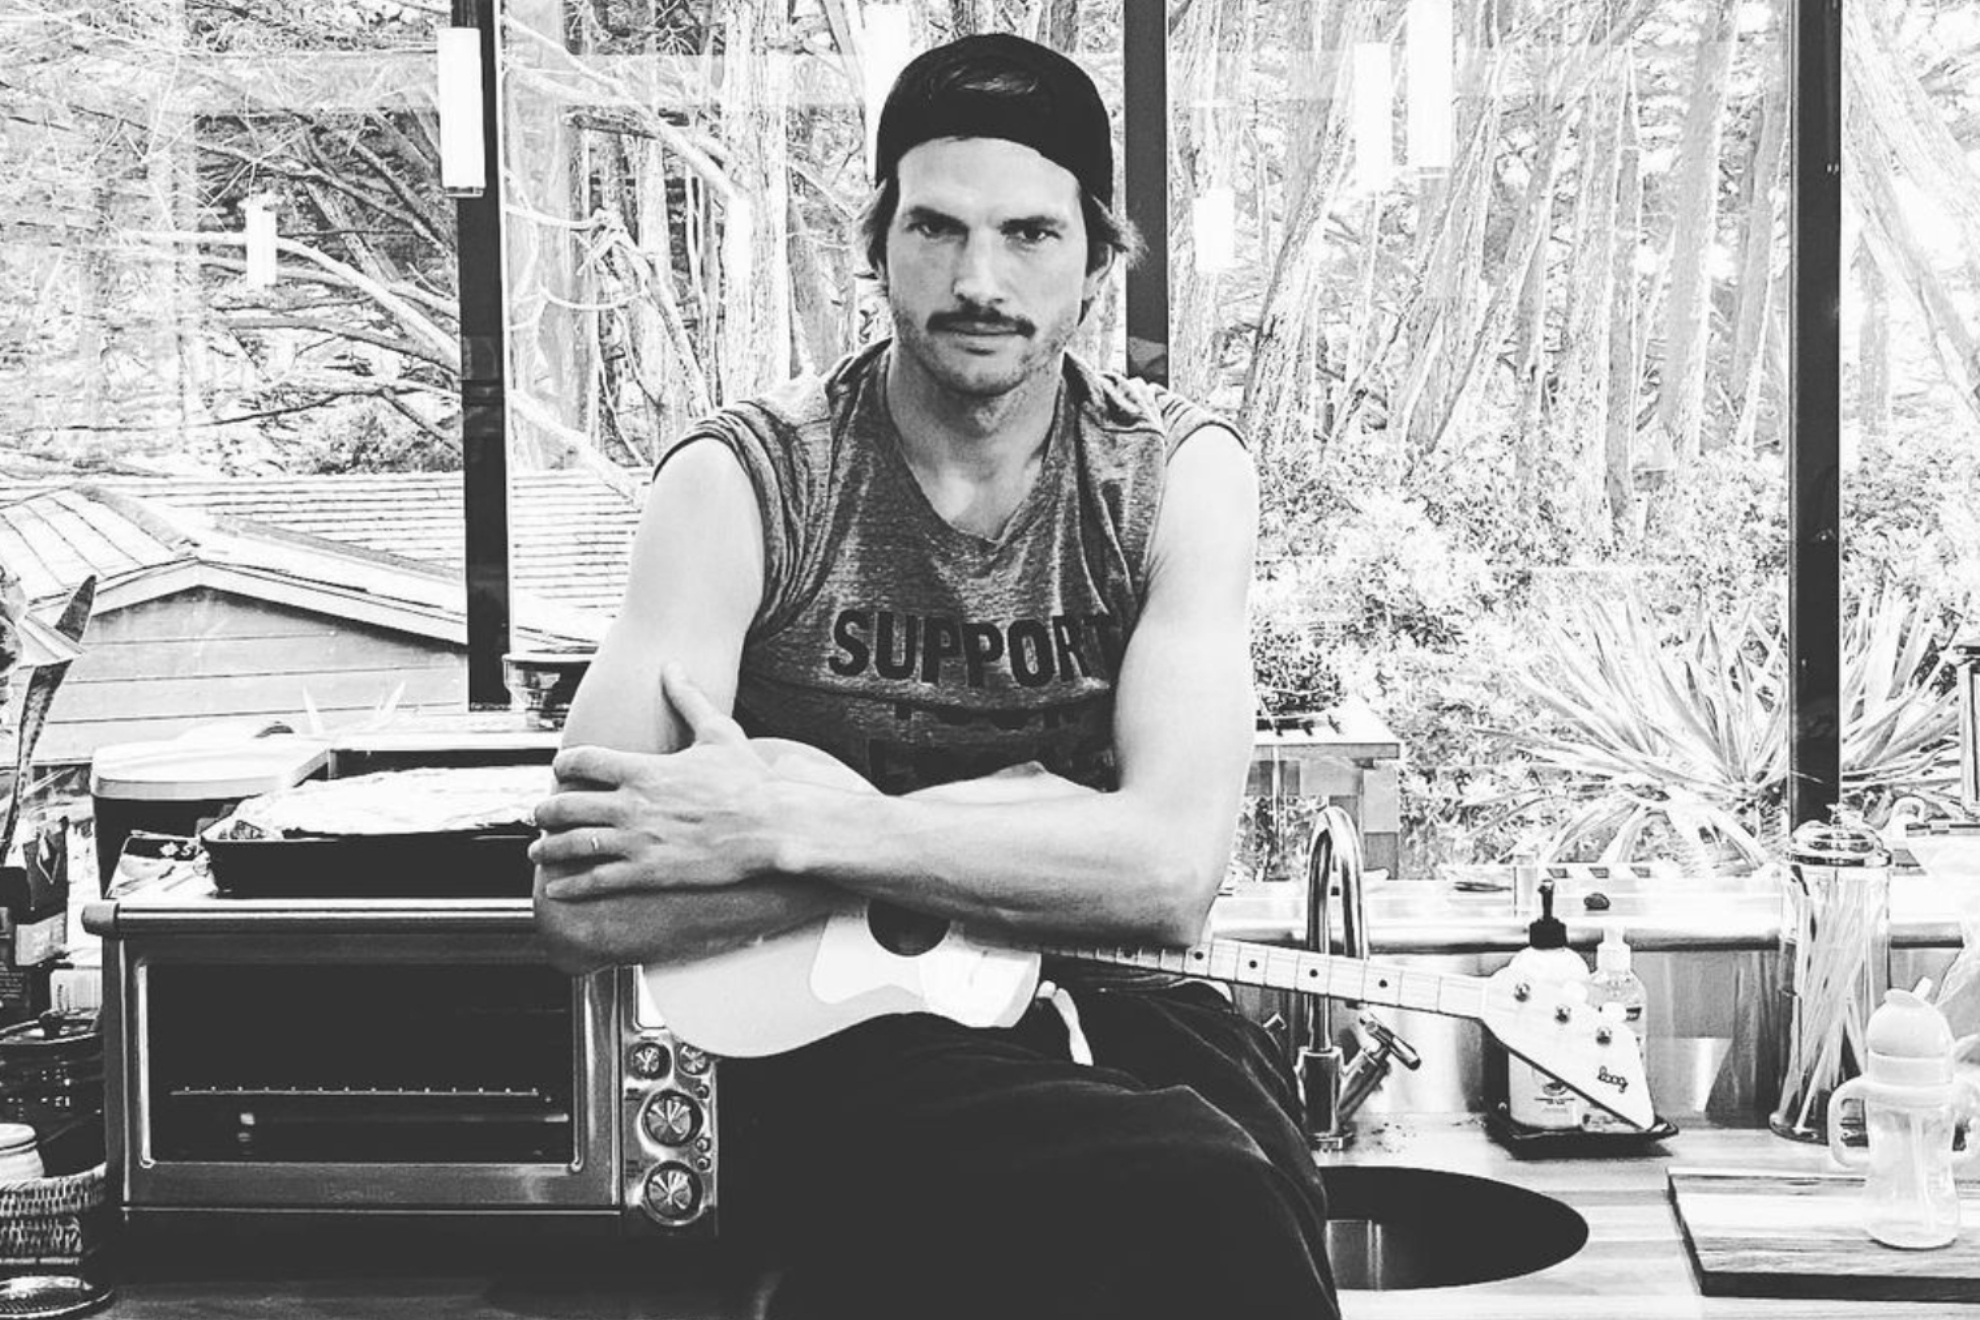 Image taken from Ashton Kutcher's official Instagram account